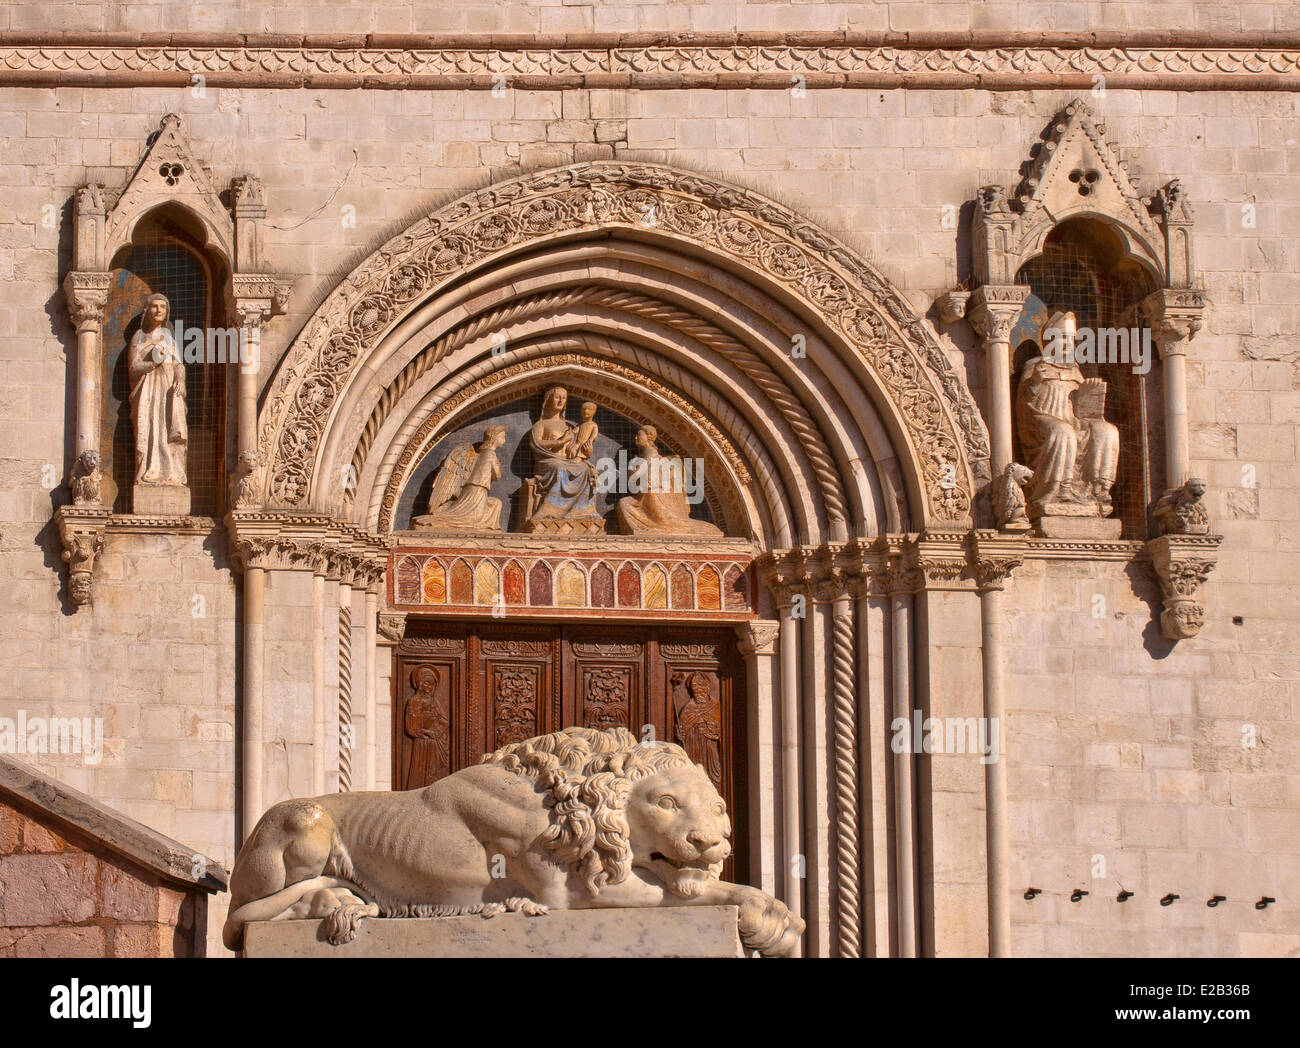 Italien, Umbrien, Norcia, Basilika San Benedetto, das Portal des 14. Jahrhunderts und Statuen von St. Scholastica Stockfoto